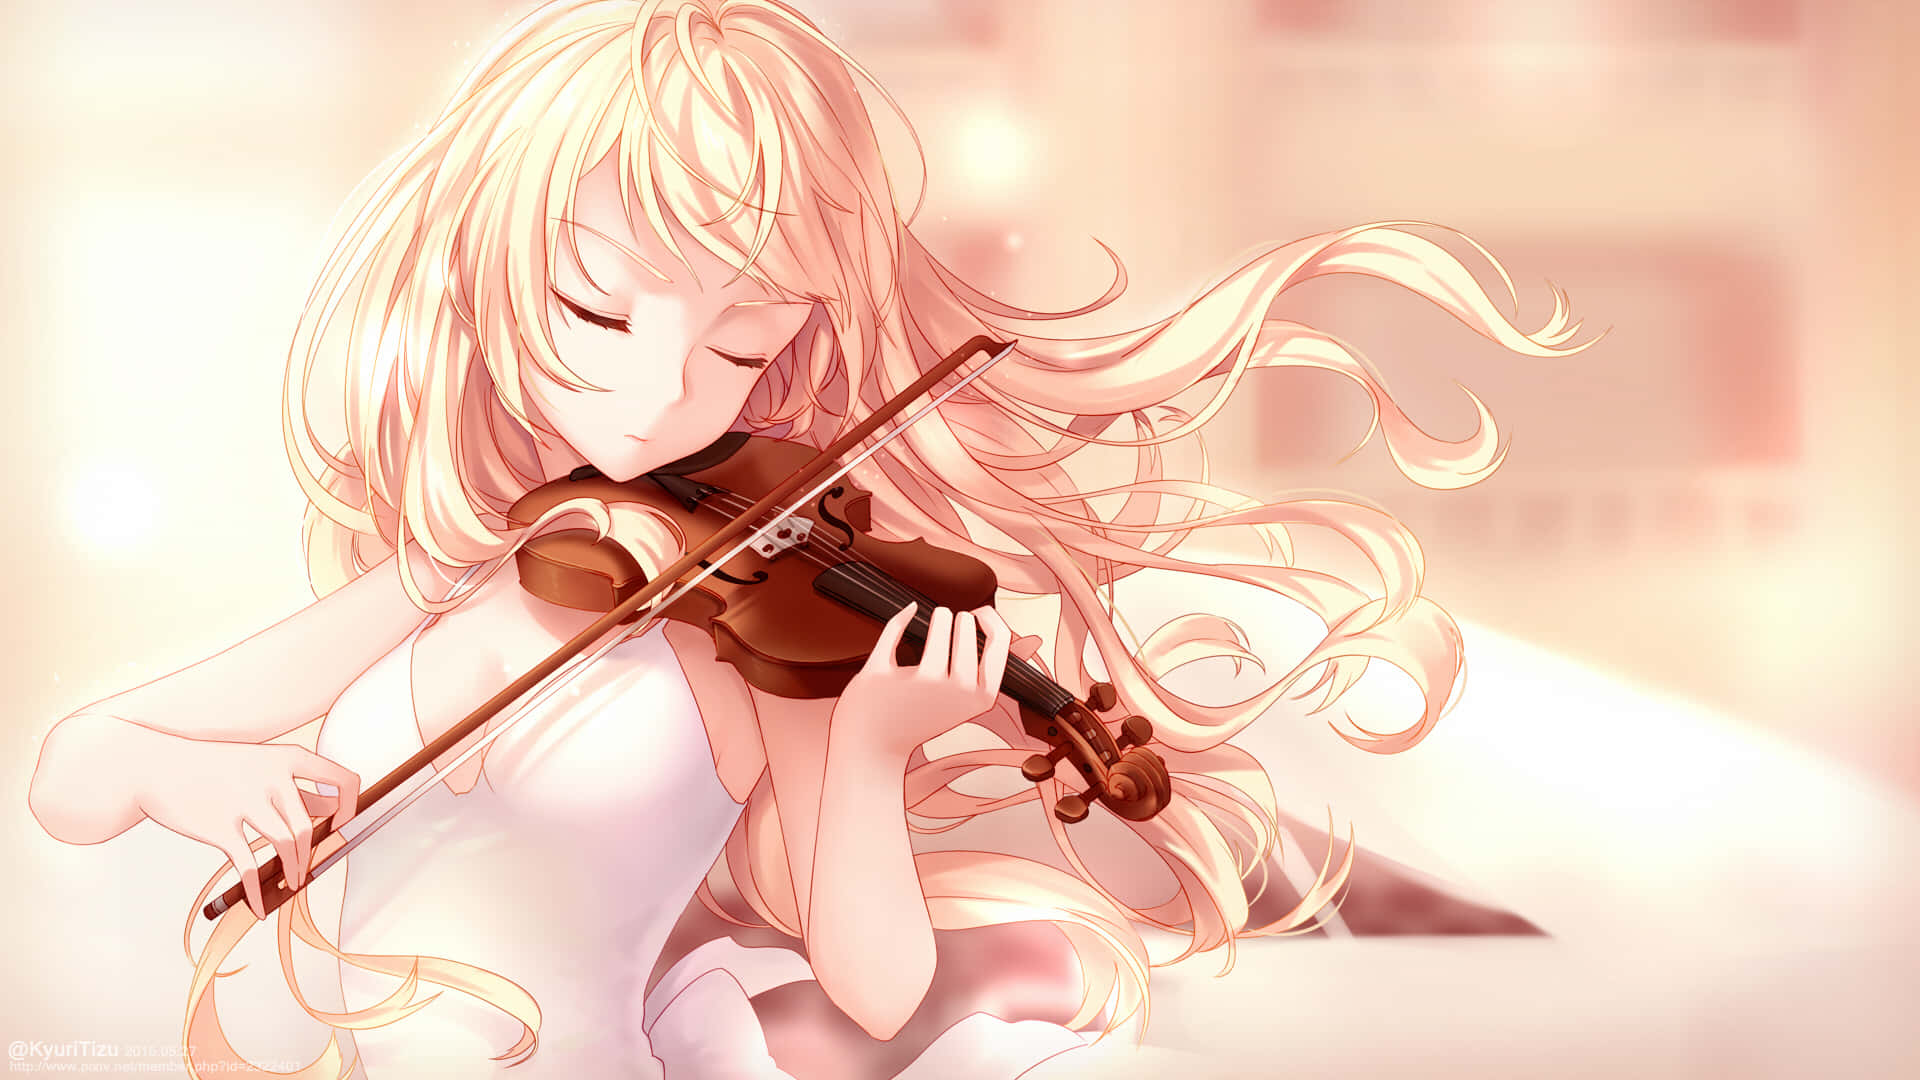 Kaorimiyazono Spielt Leidenschaftlich Ihre Violine Bei Einer Aufführung.